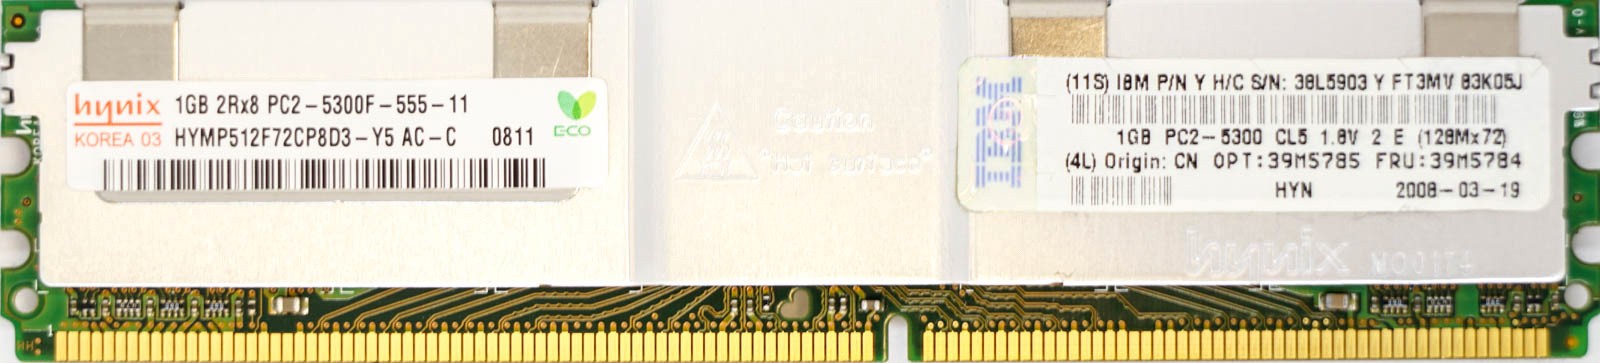 IBM (38L5903) - 1GB PC2-5300F (DDR2-667Mhz, 2RX8)